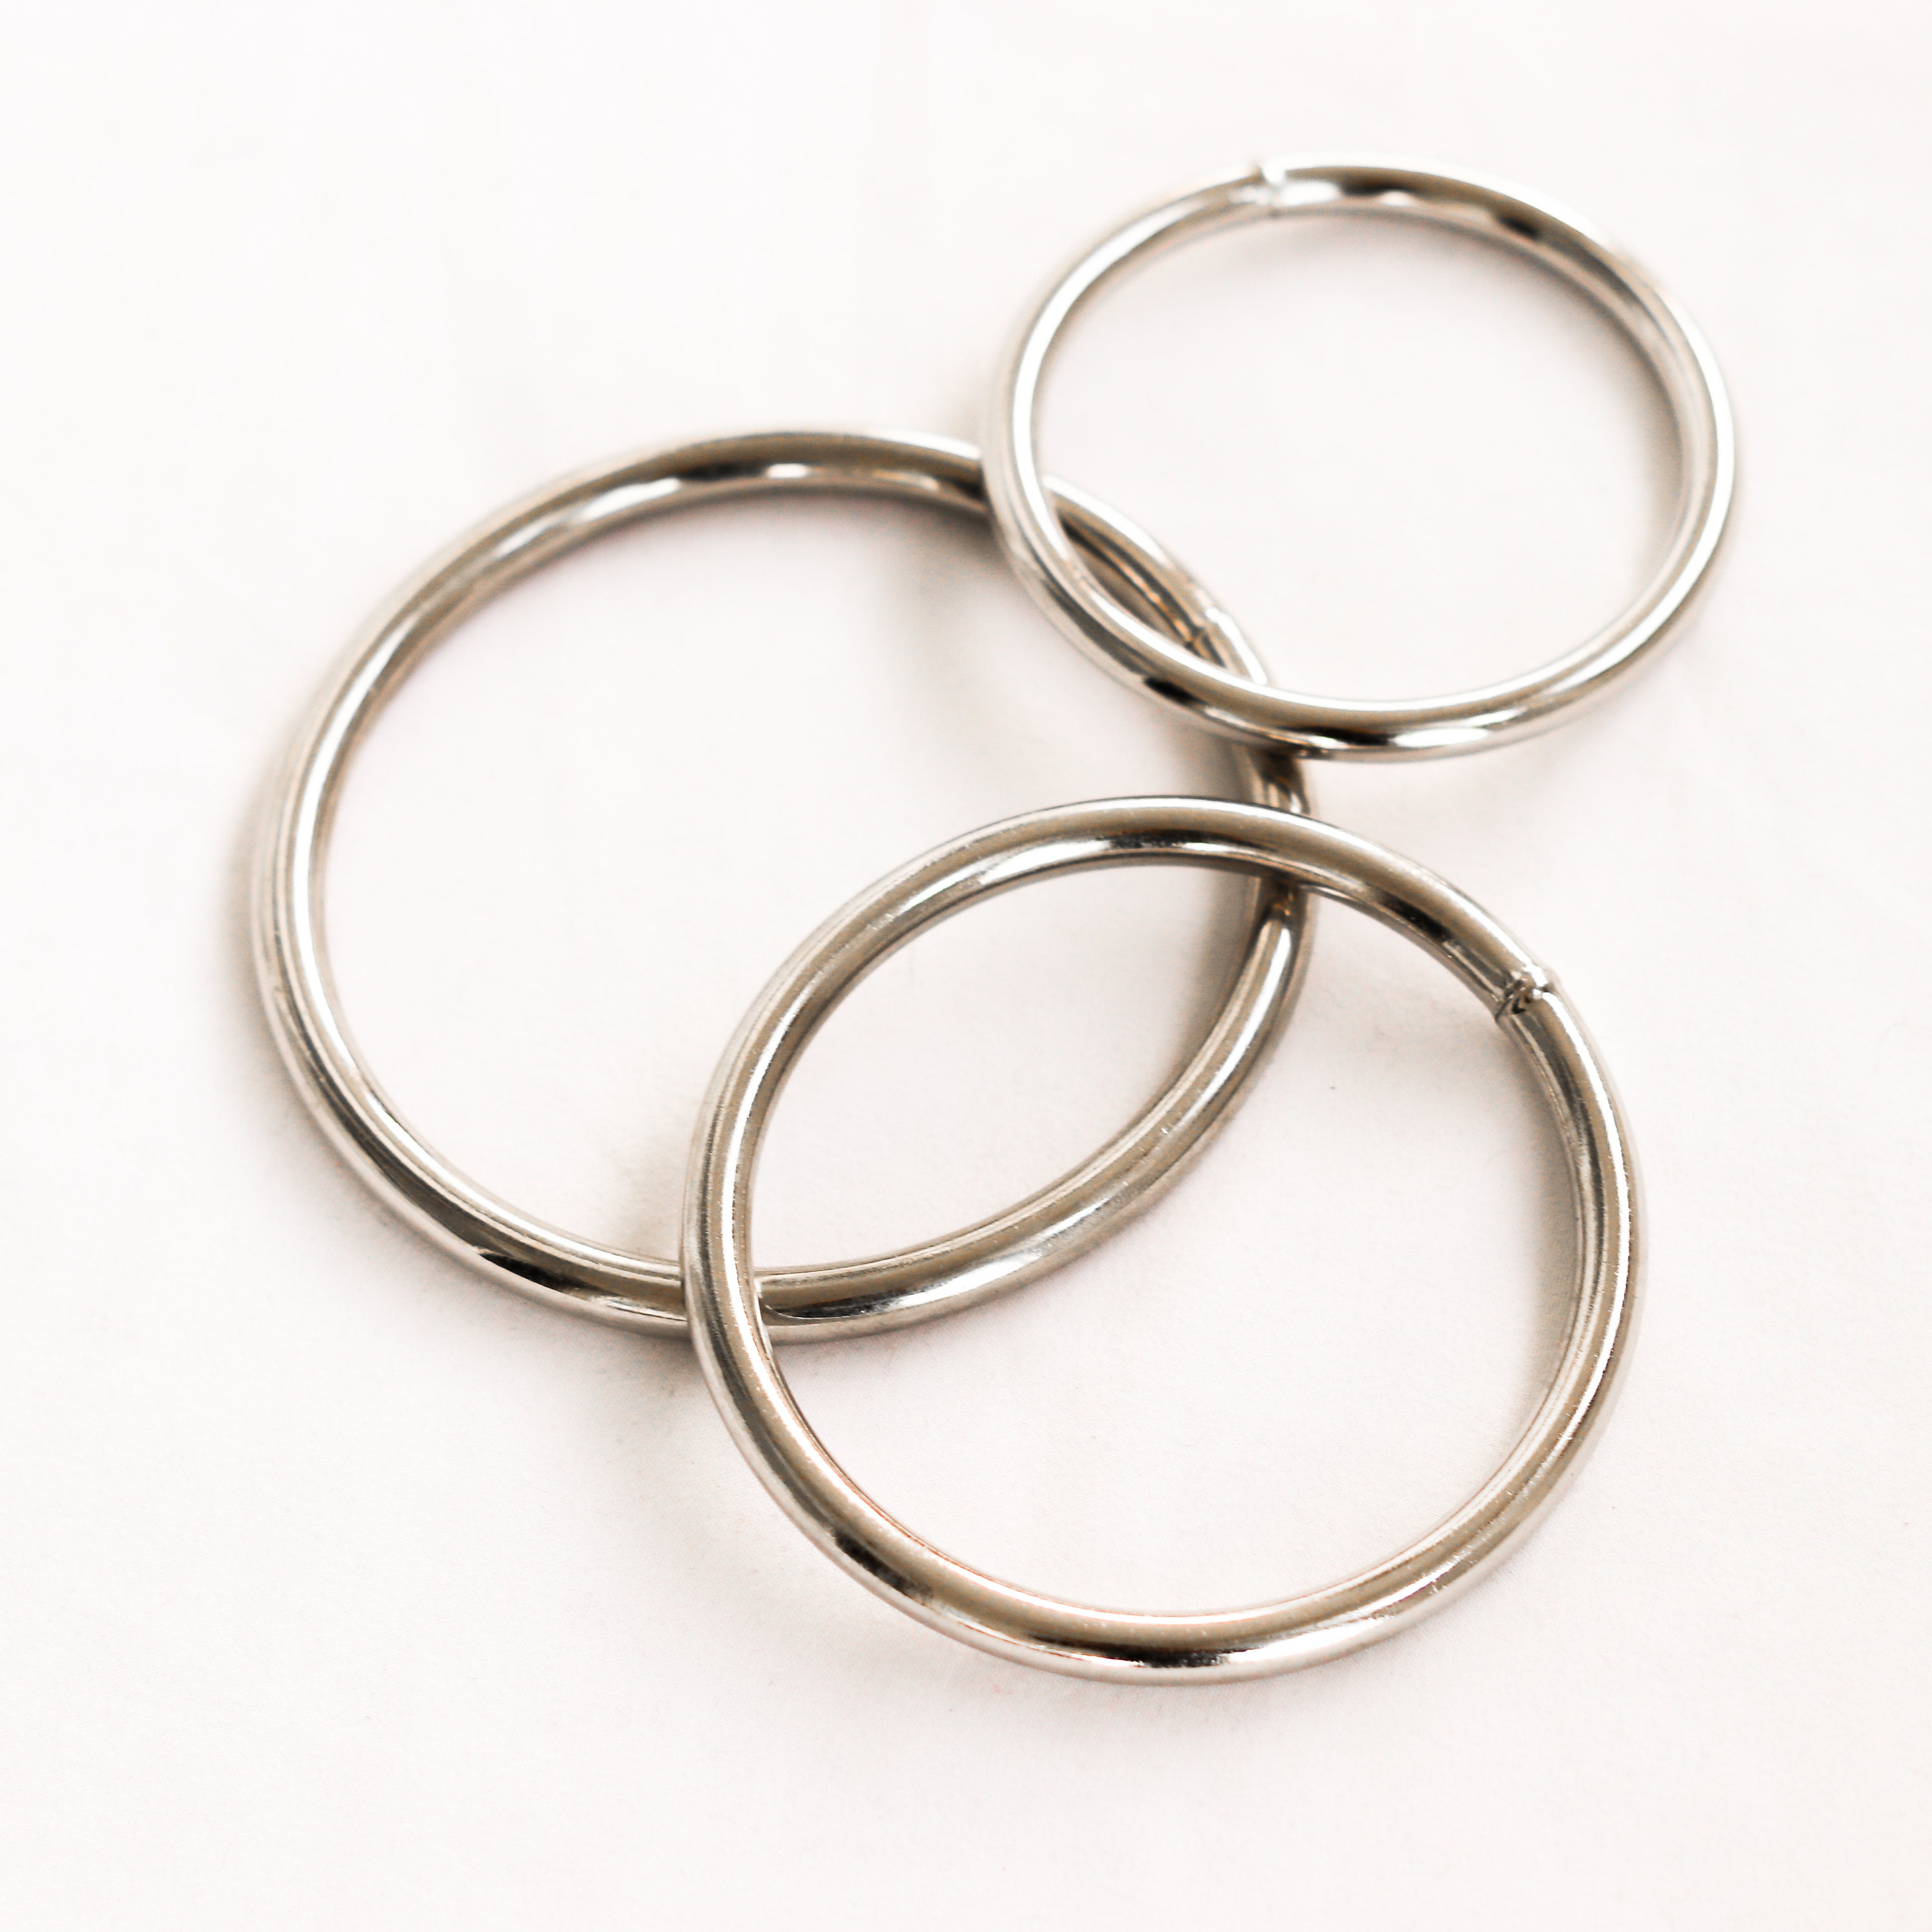 Metal O-rings Welded Metal Loops Round Formed Rings Gold Silver